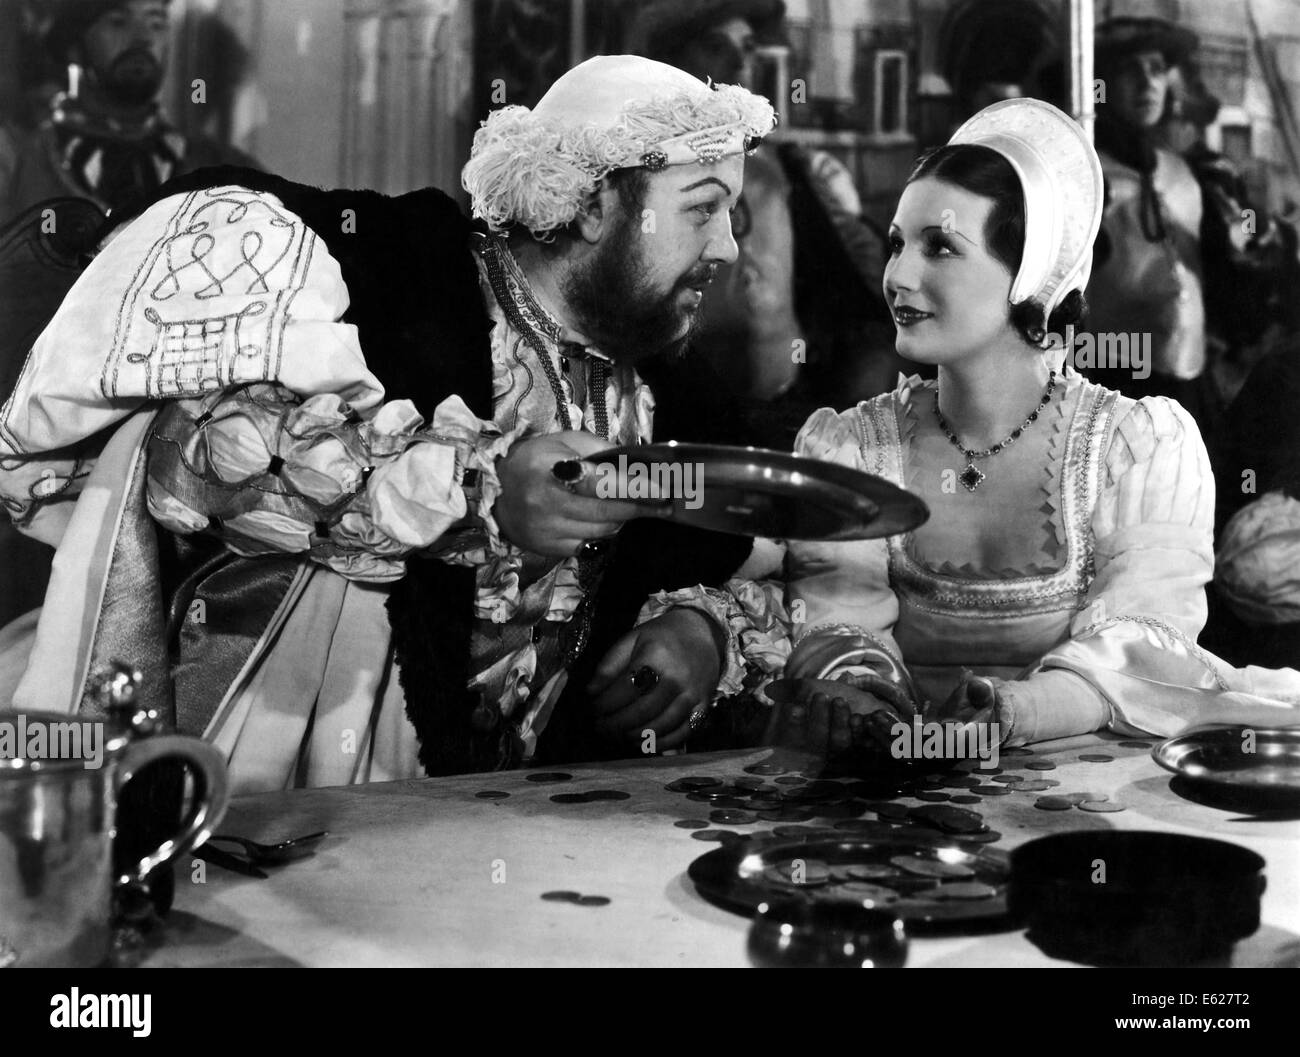 La vita privata di Henry VIII - con Charles Laughton - diretto da Alexander Korda - United Artists 1933 Foto Stock